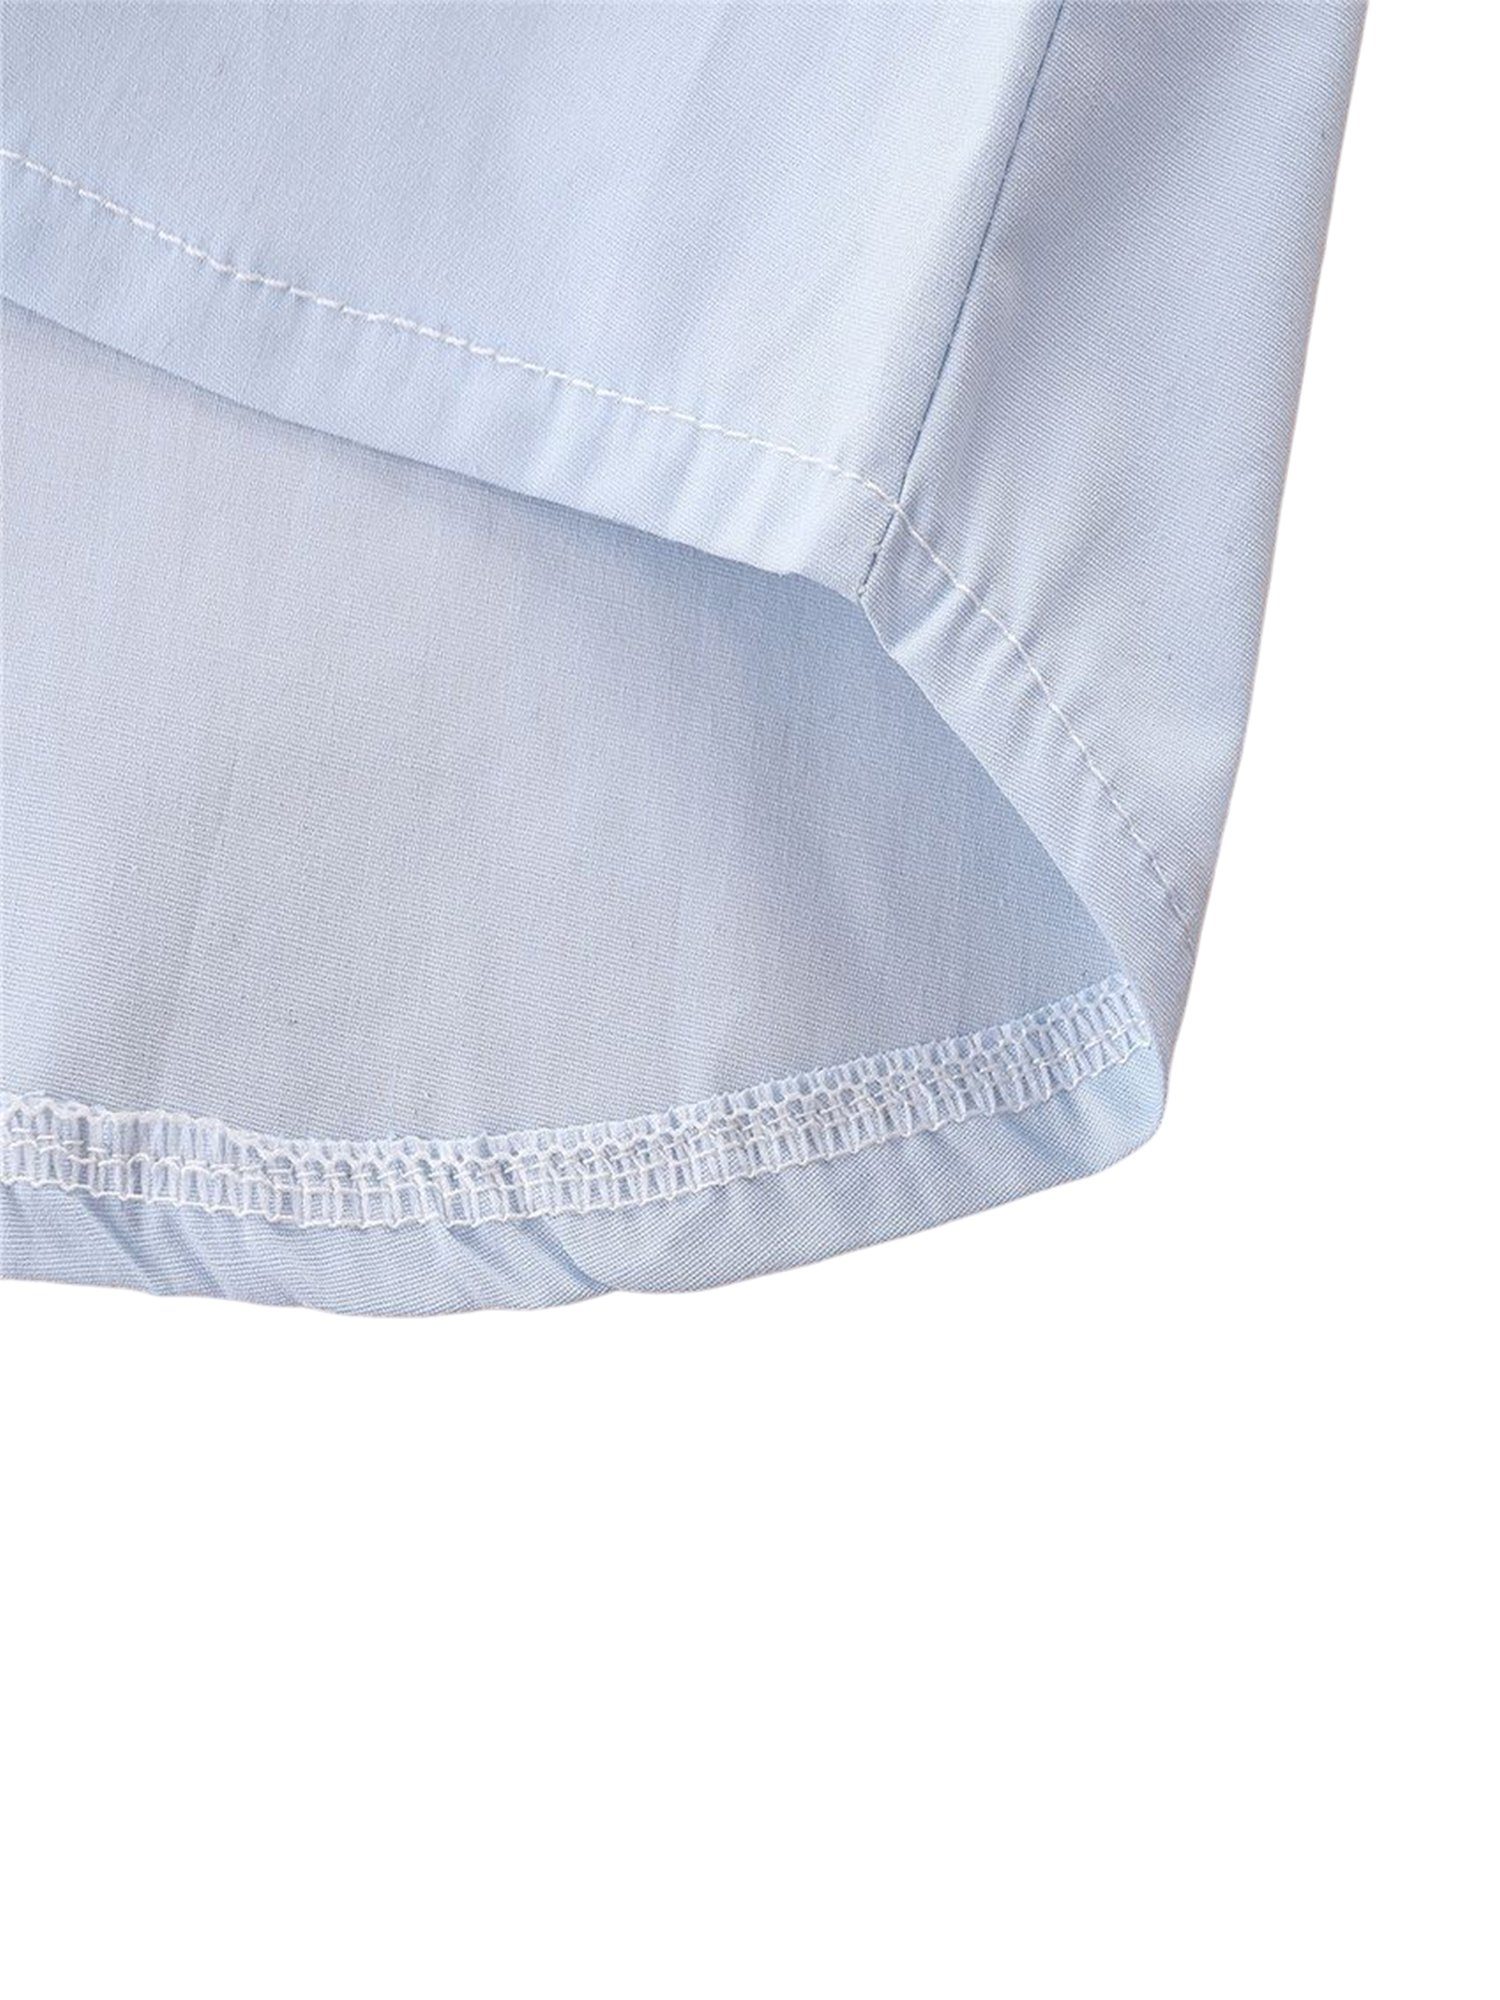 Lapastyle Anzug Hemd 2-tlg., Hahnentrittmuster mit Kurzarmhemd + (Set, zweiteiliges Baby / Overall & Short) Kinder-Herrenanzug